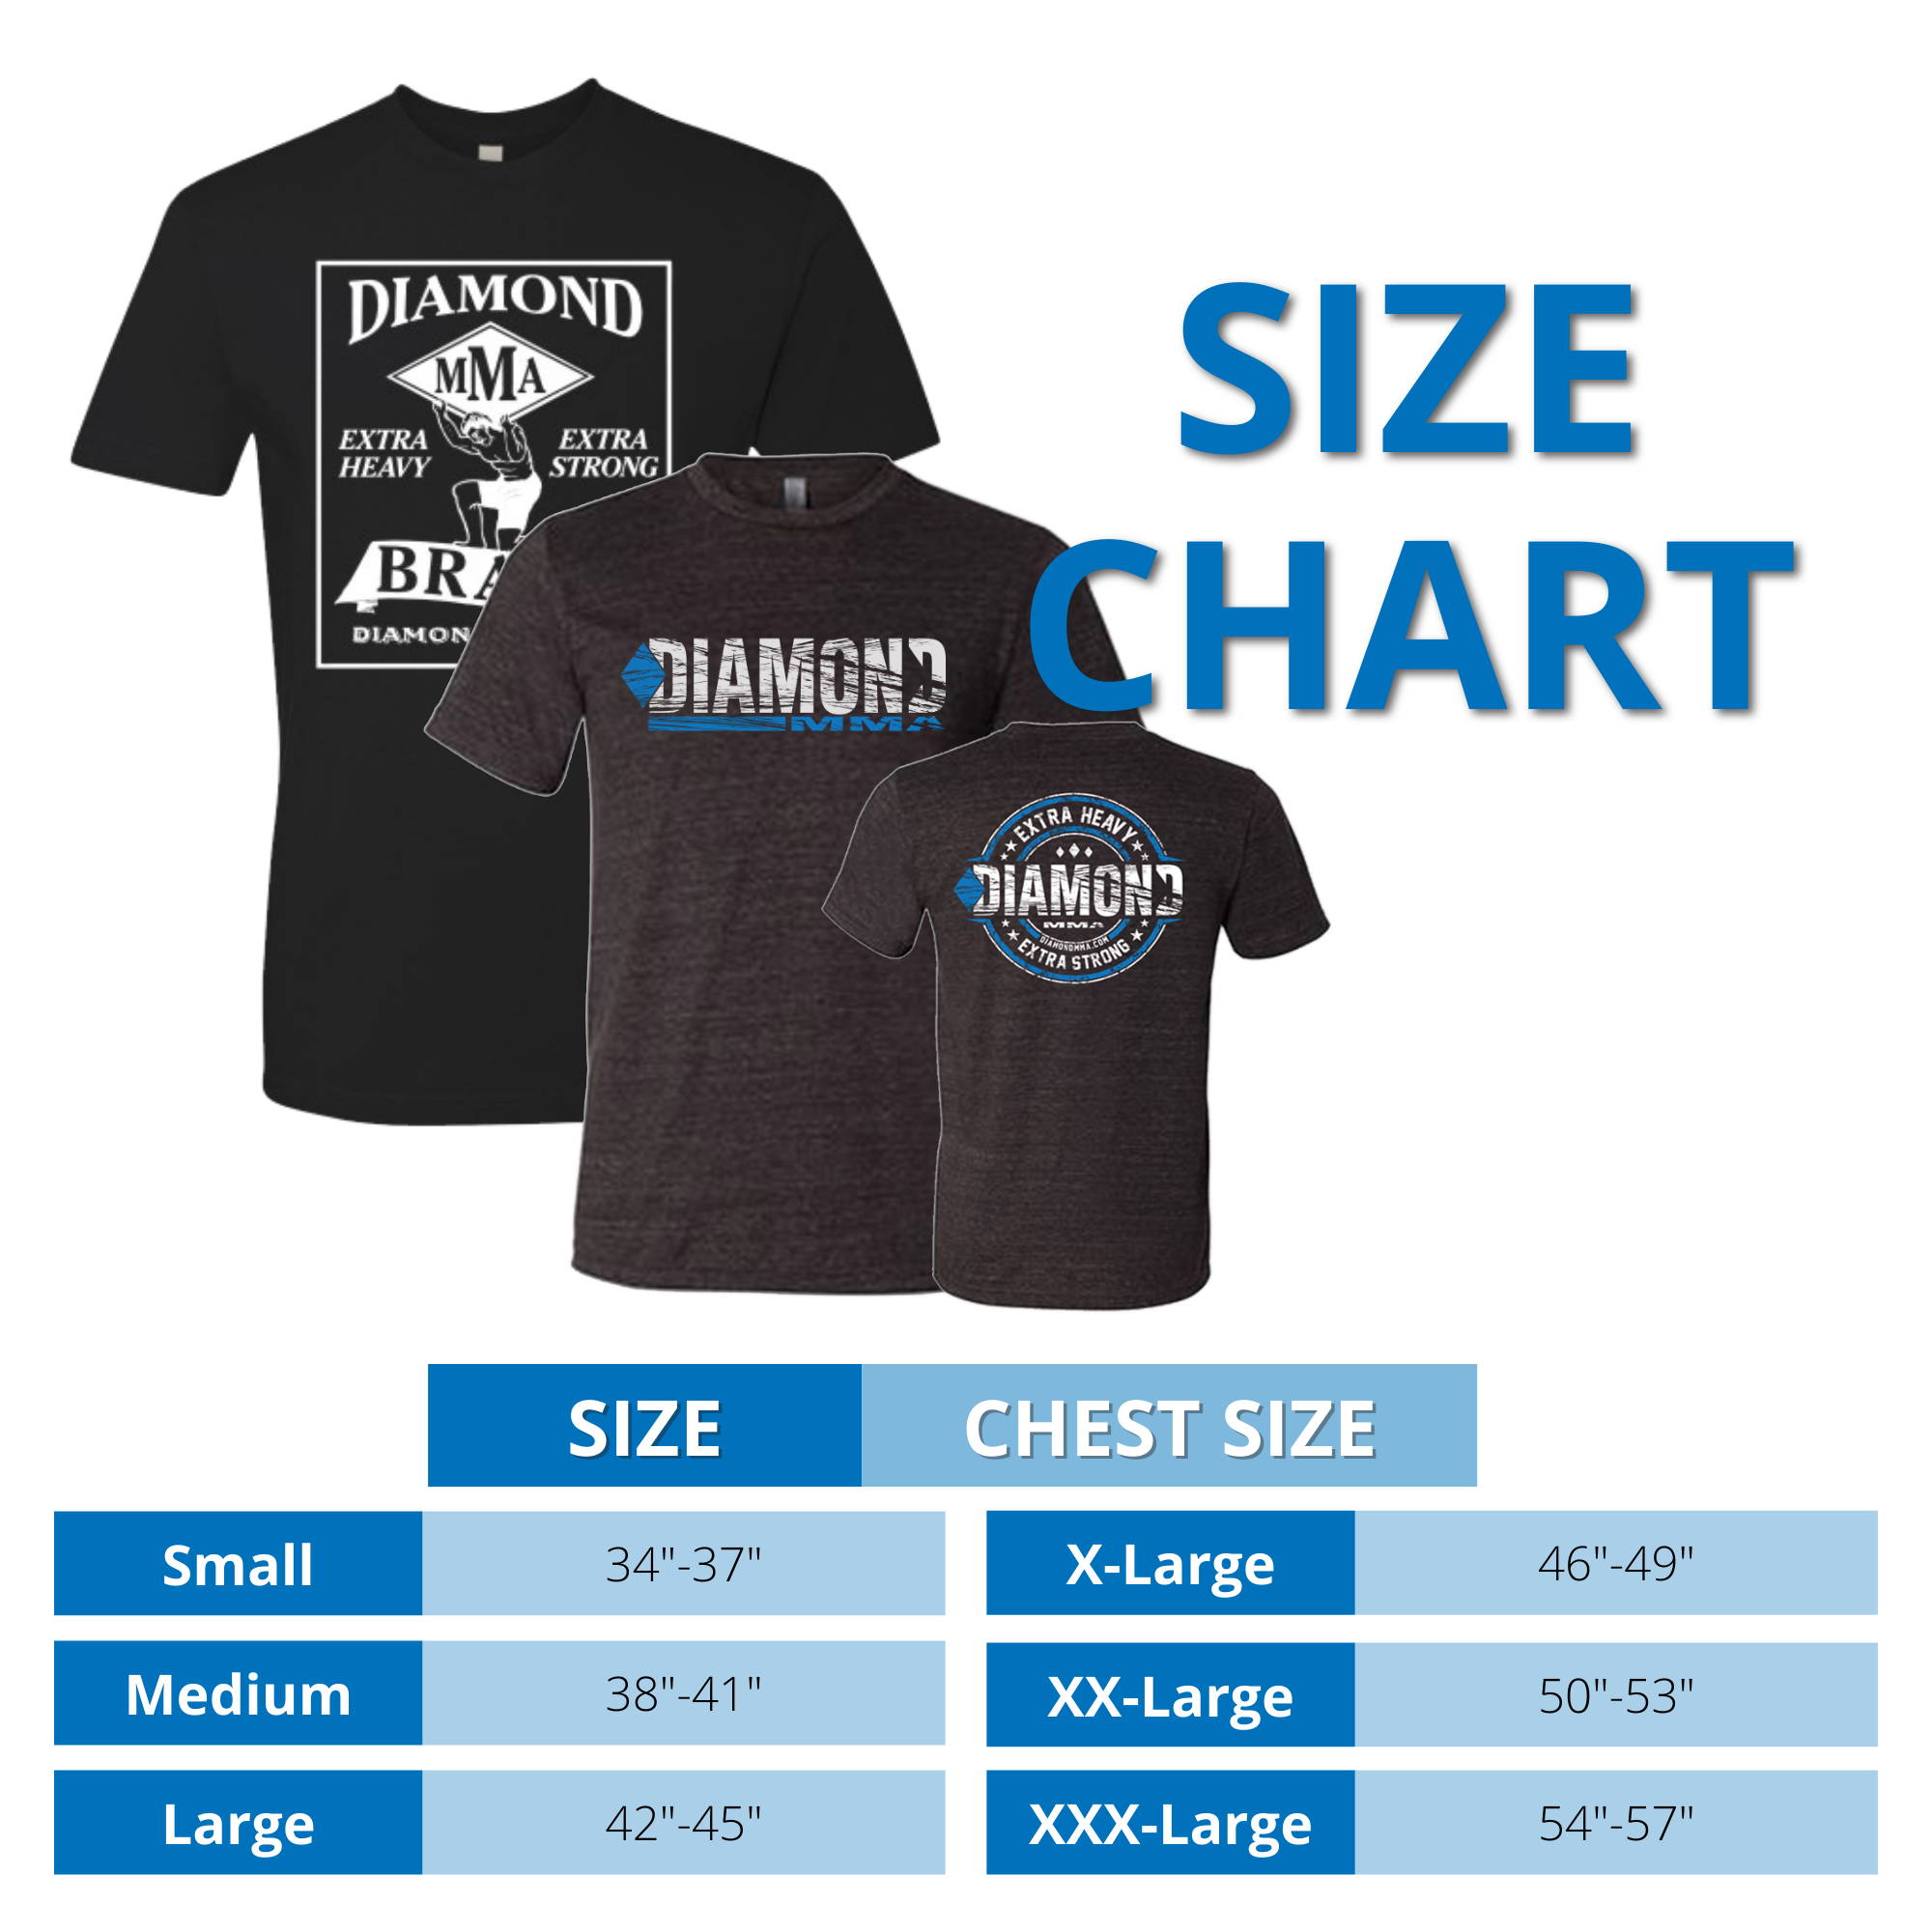 Diamond MMA T-Shirt Size Chart